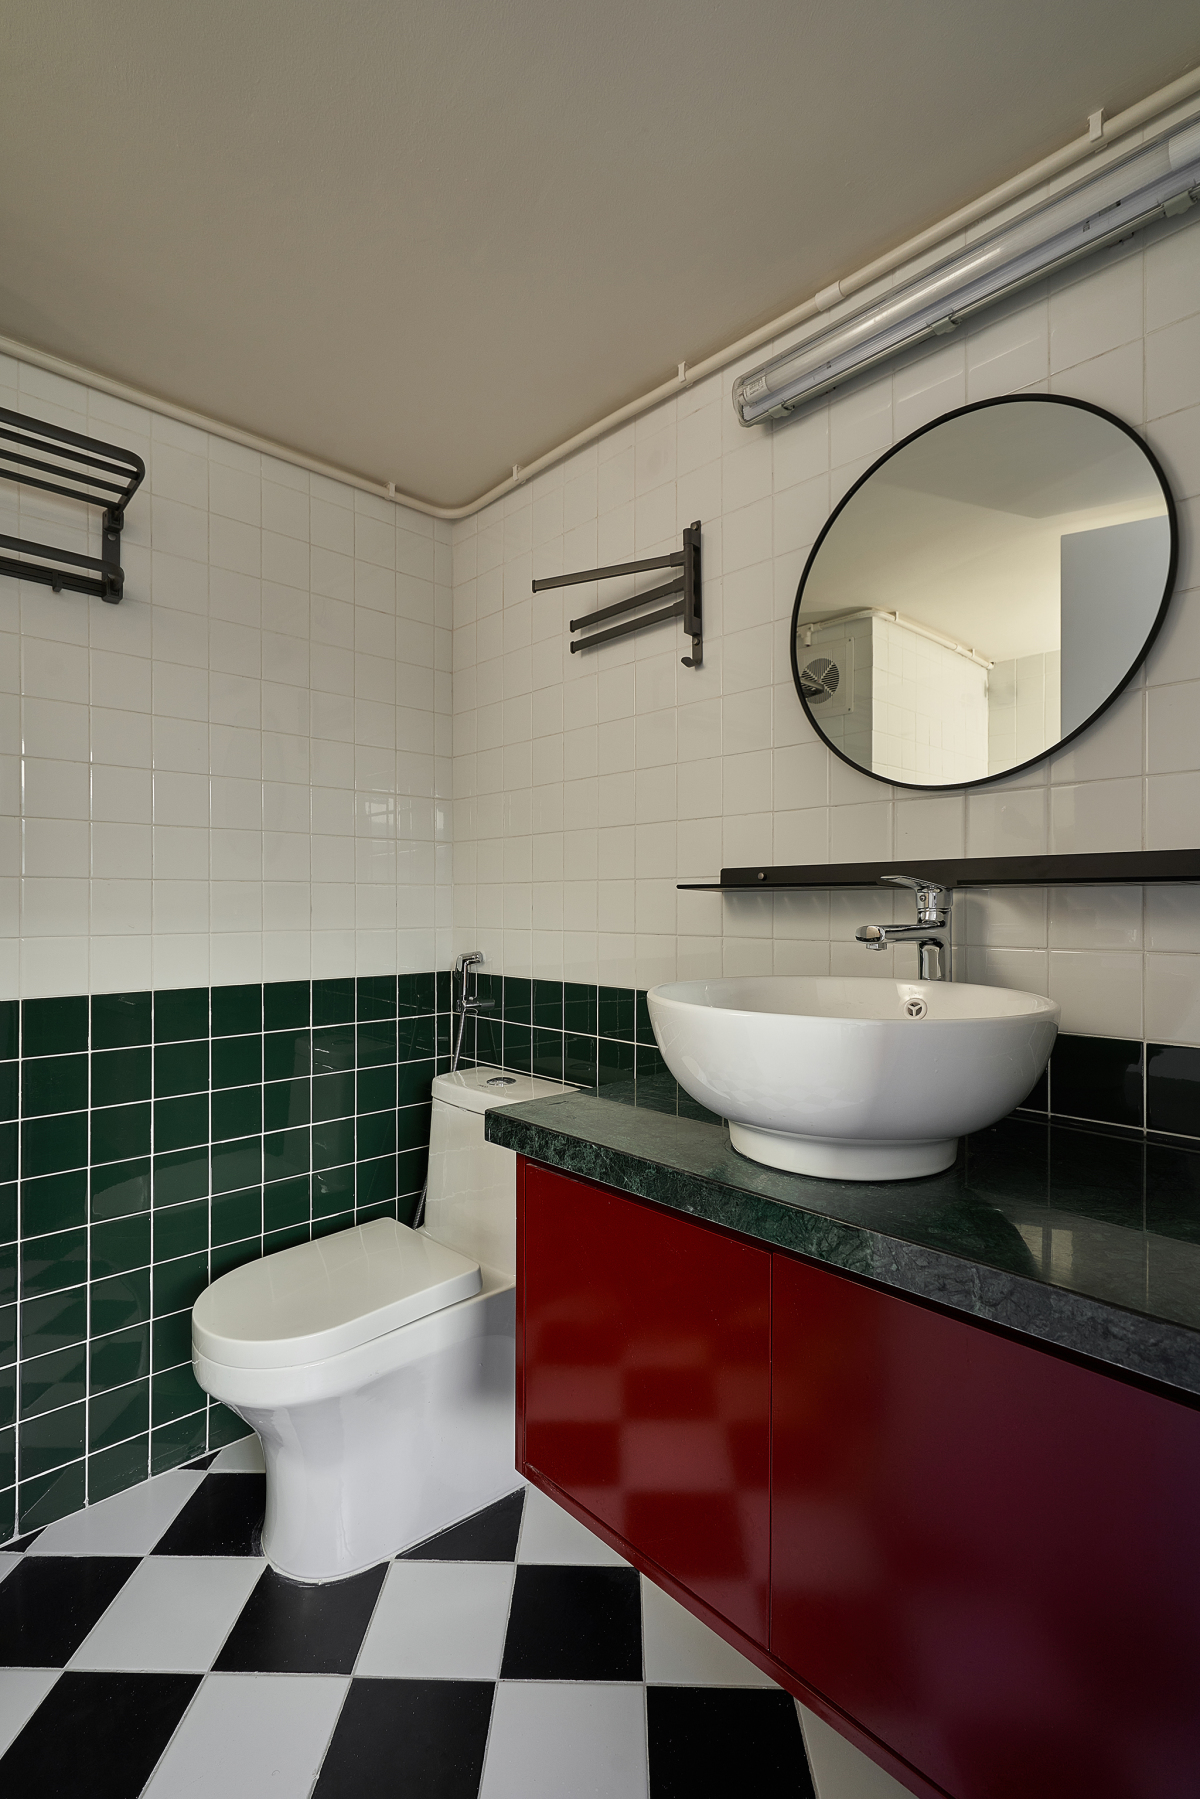 Phòng vệ sinh mang tông màu cổ điển, bố trí thiết bị cơ bản, tạo cảm giác rộng thoáng, gọn gàng.